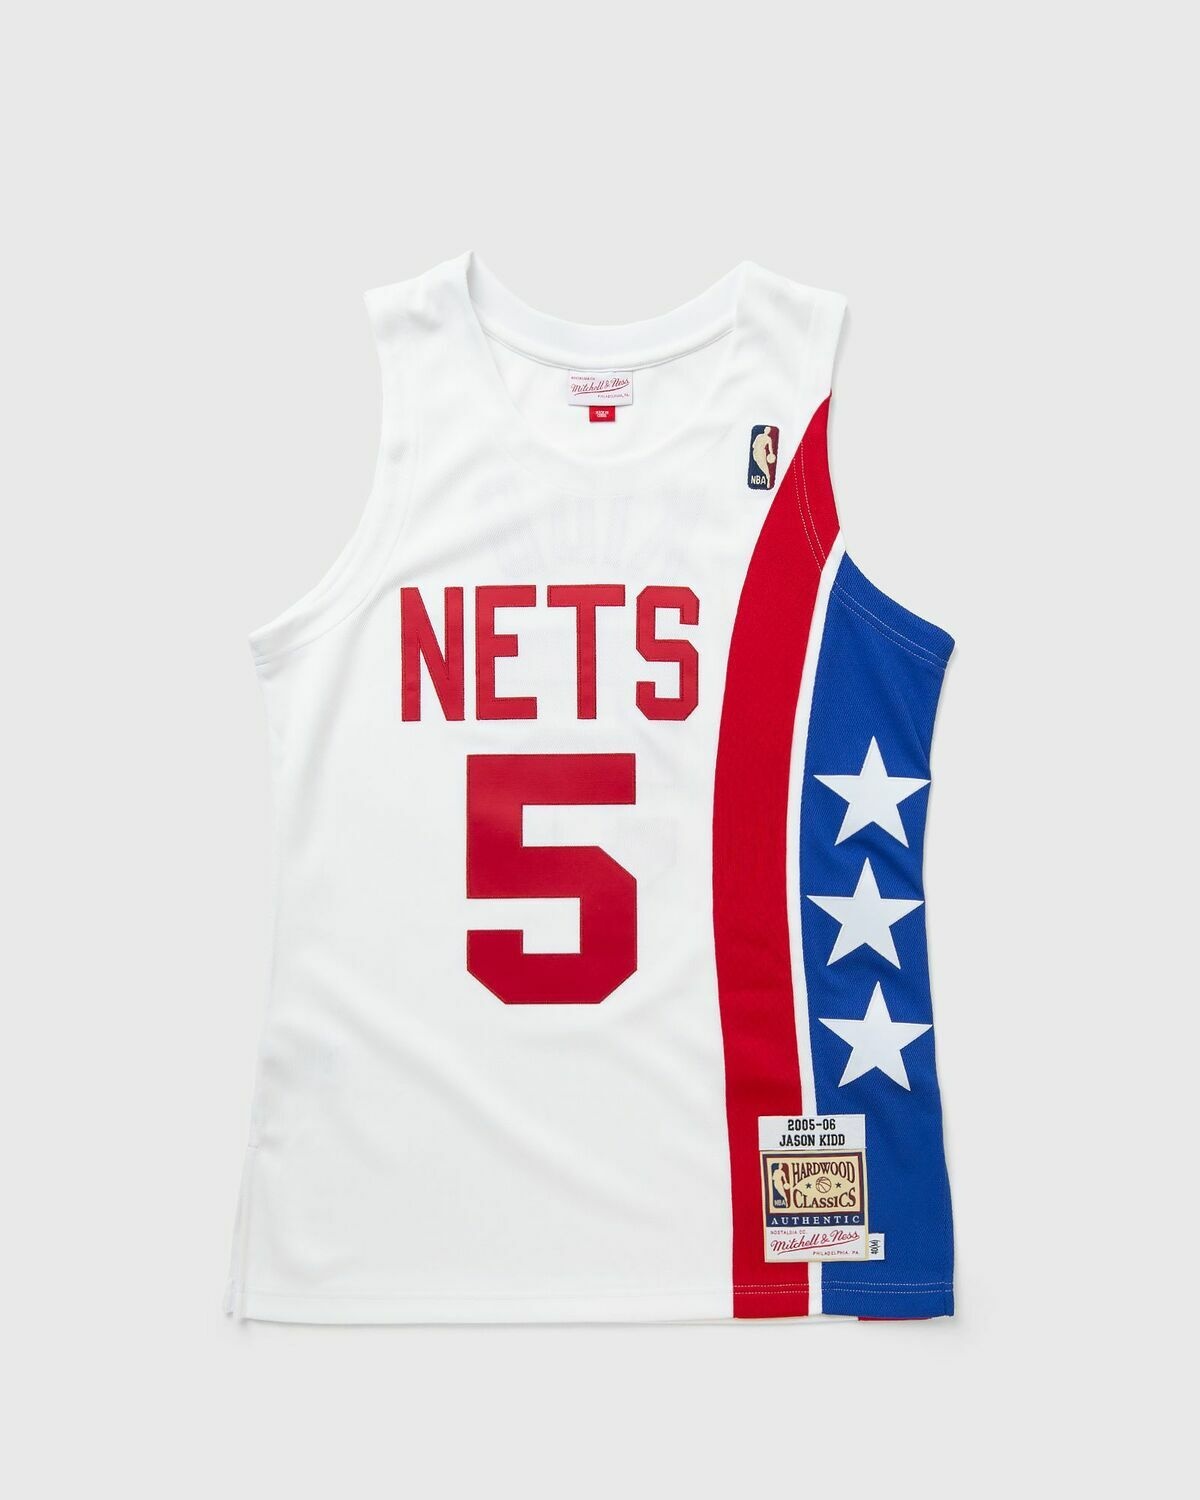 Mitchell & Ness Nba Authentic Jersey New Jersey Nets Alternate 2005 06 Jason Kidd #5 White - Mens - Jerseys